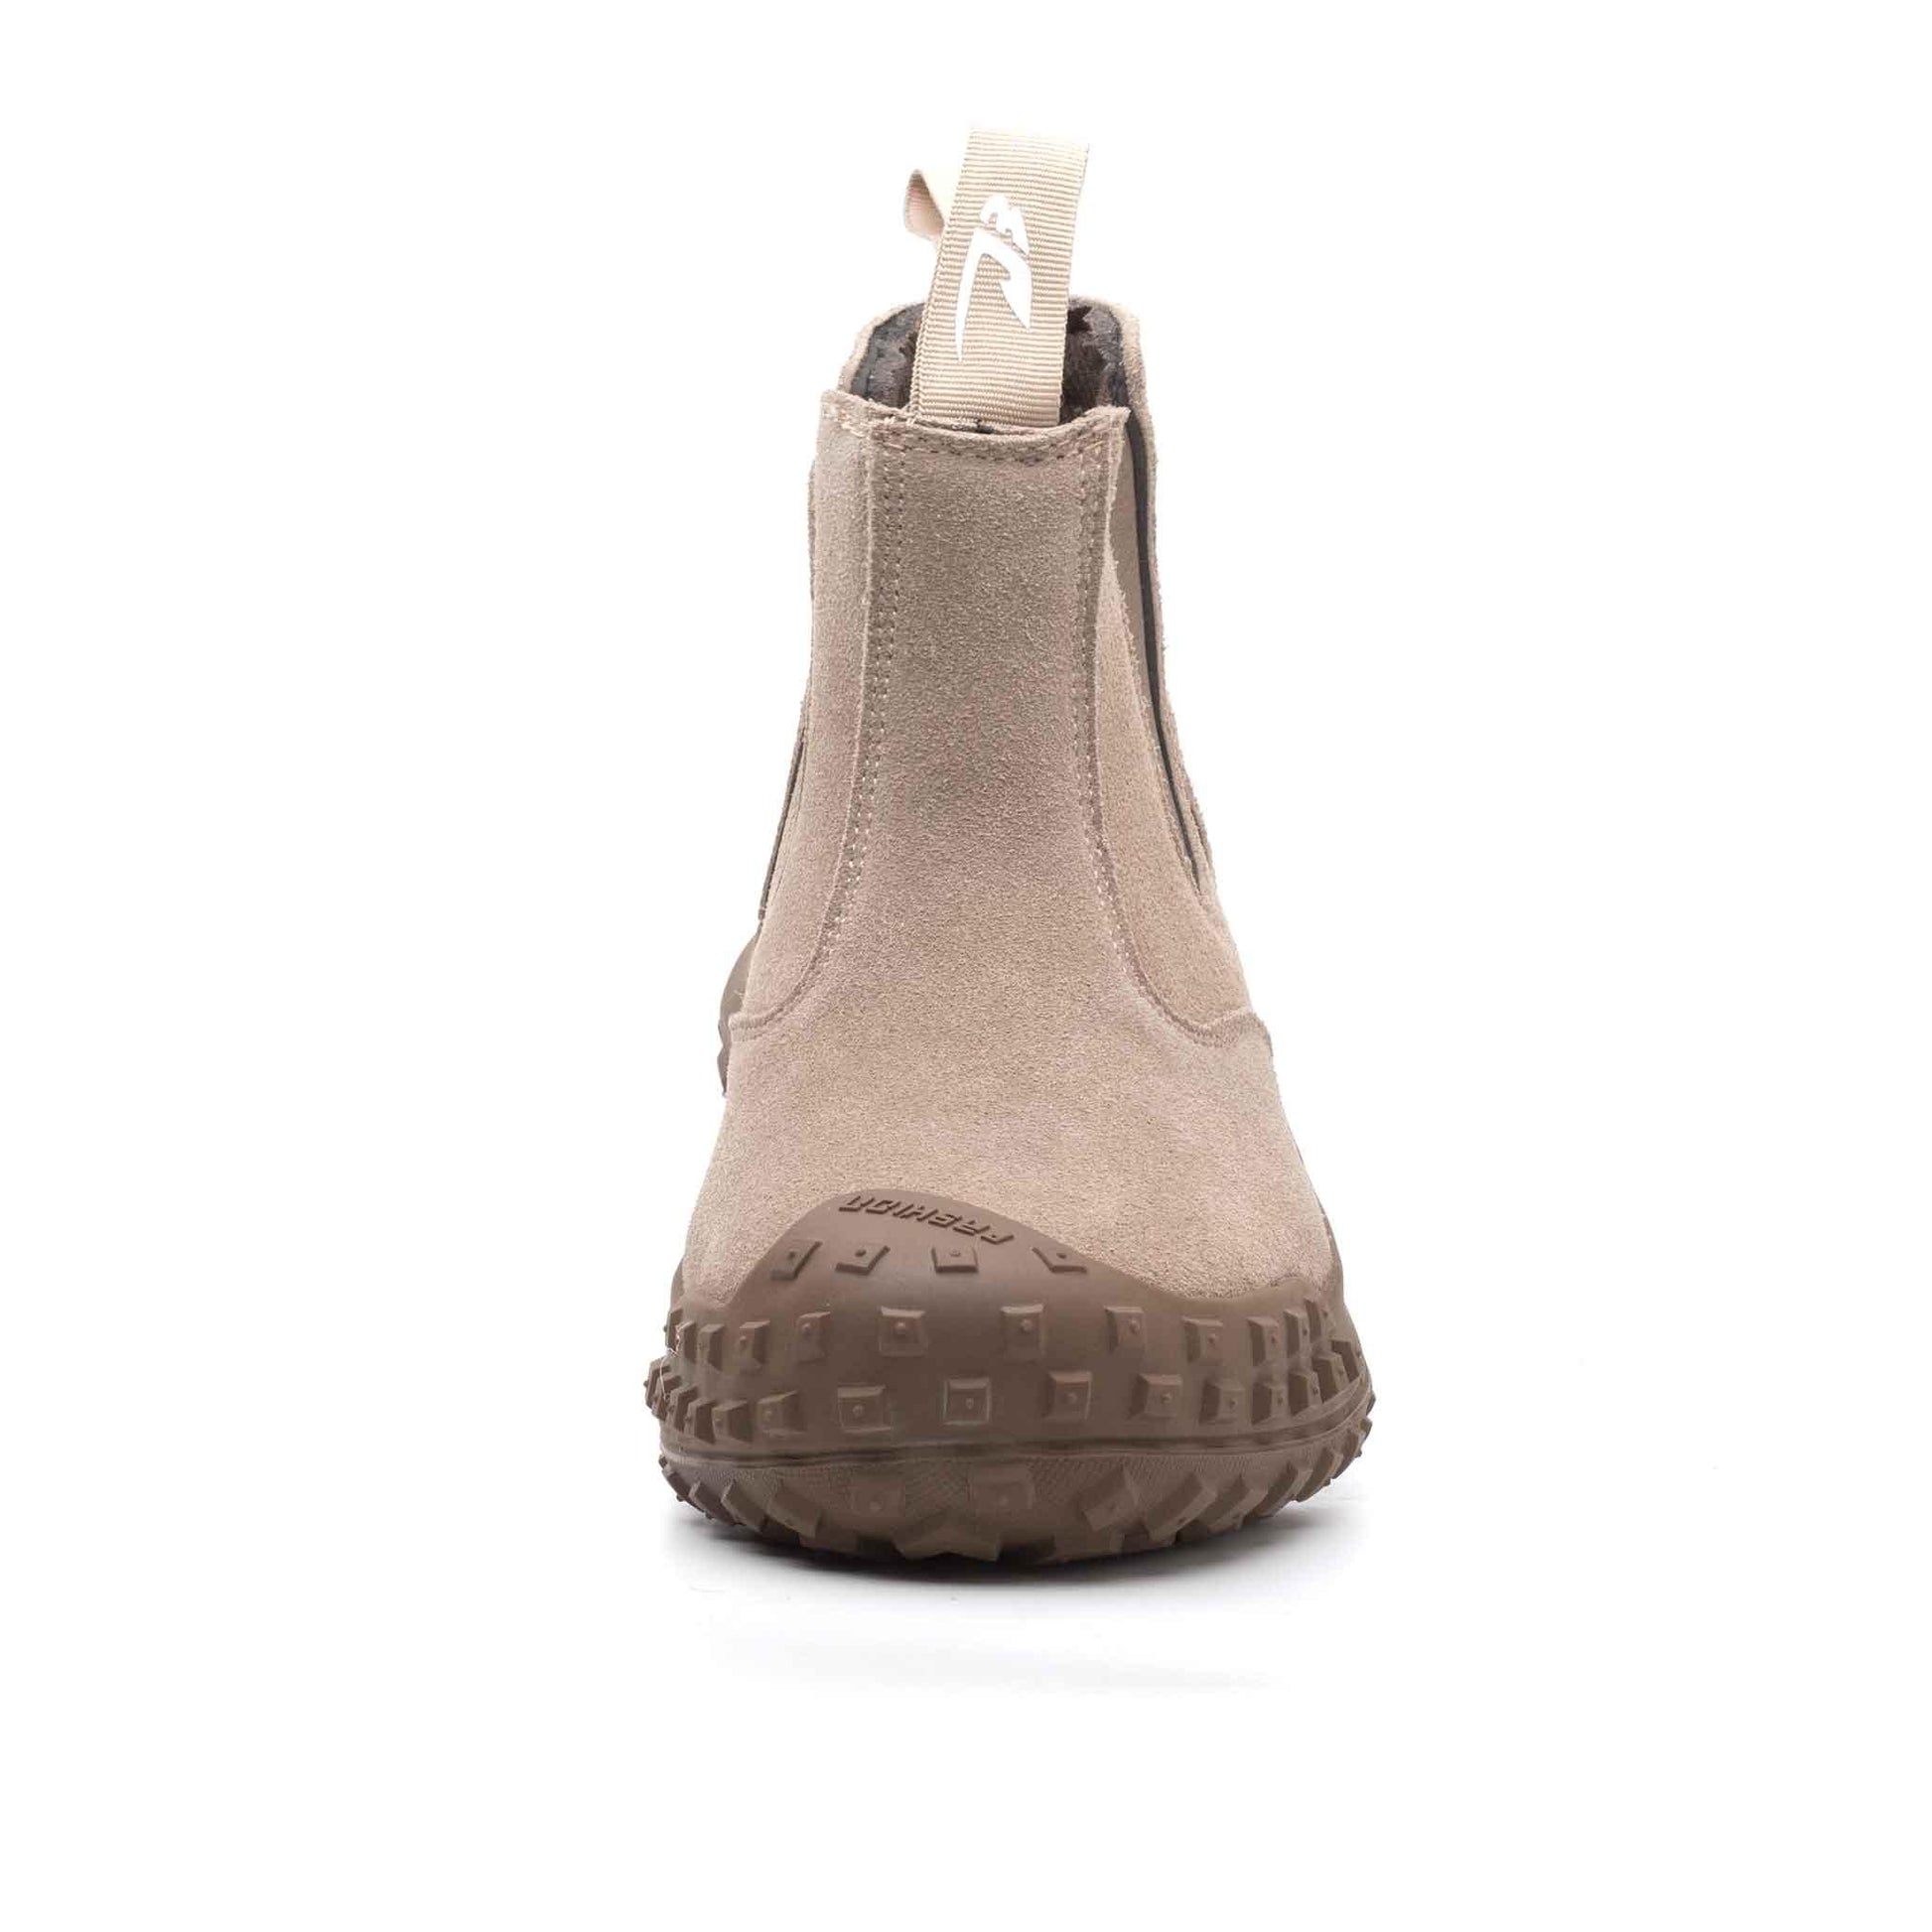 Men's Steel Toe Chelsea Boots - Slip Resistant | B206 - USINE PRO Footwear